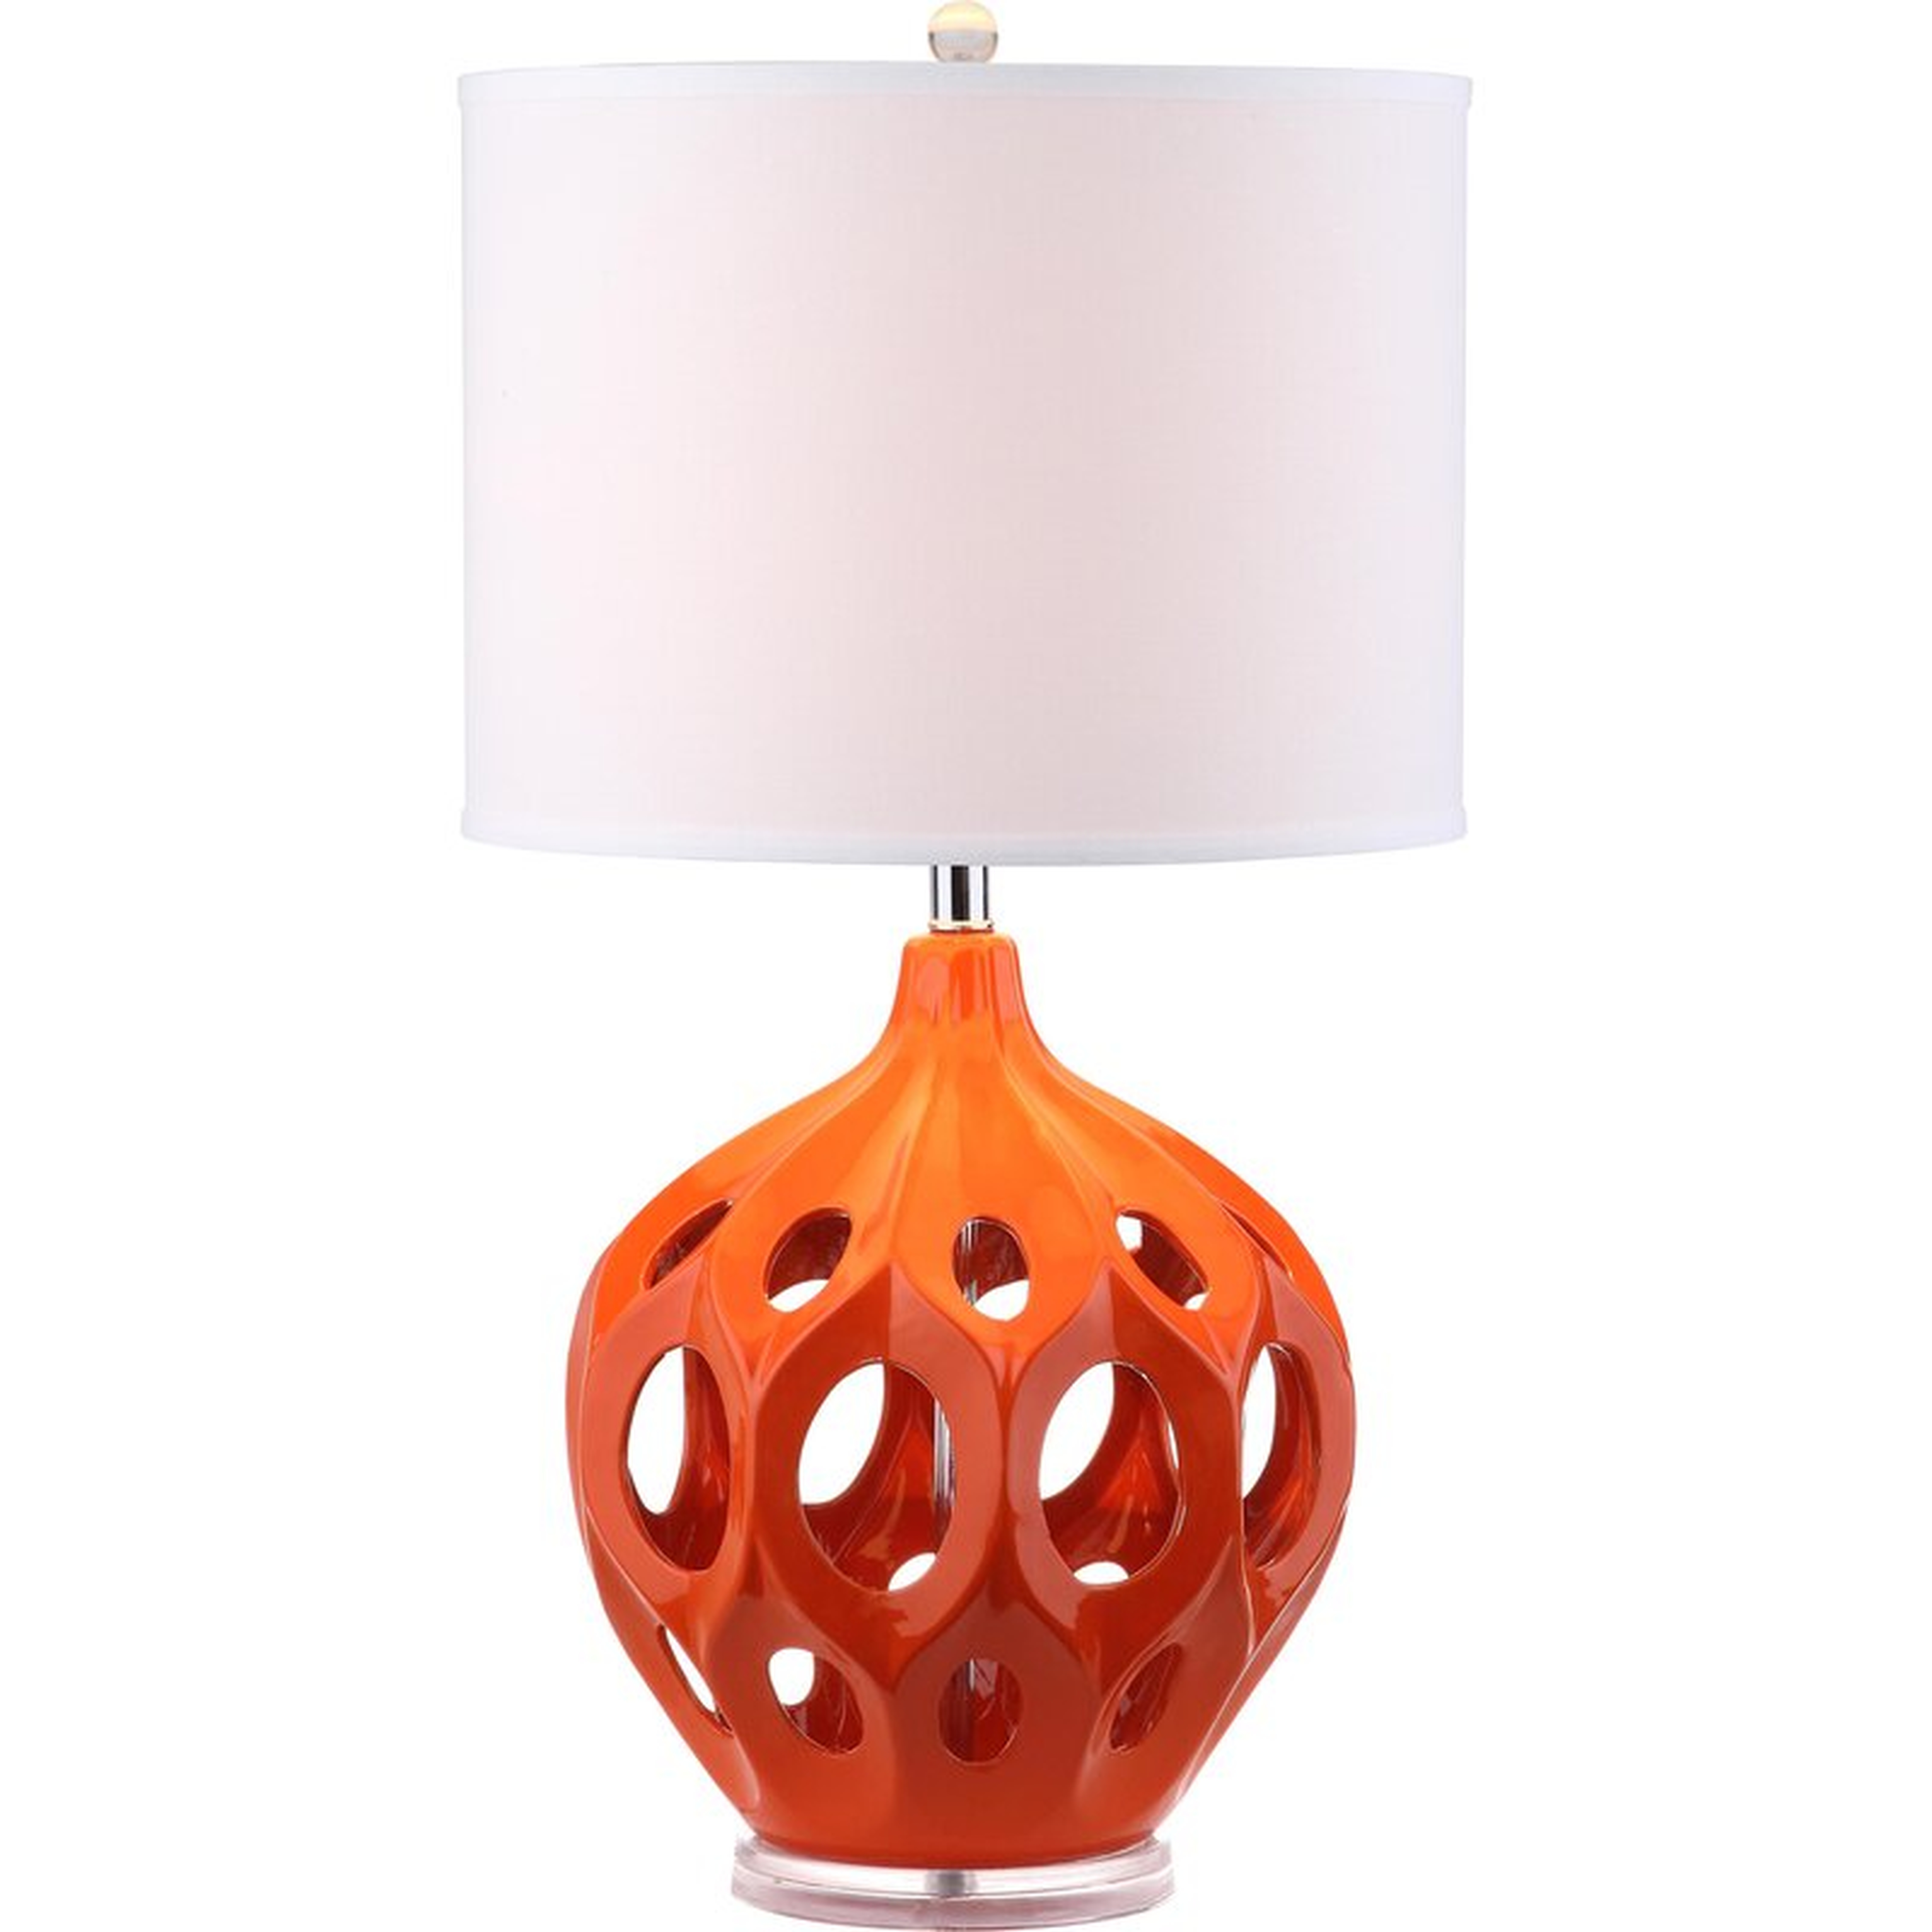 Zara 29" Table Lamp - Wayfair